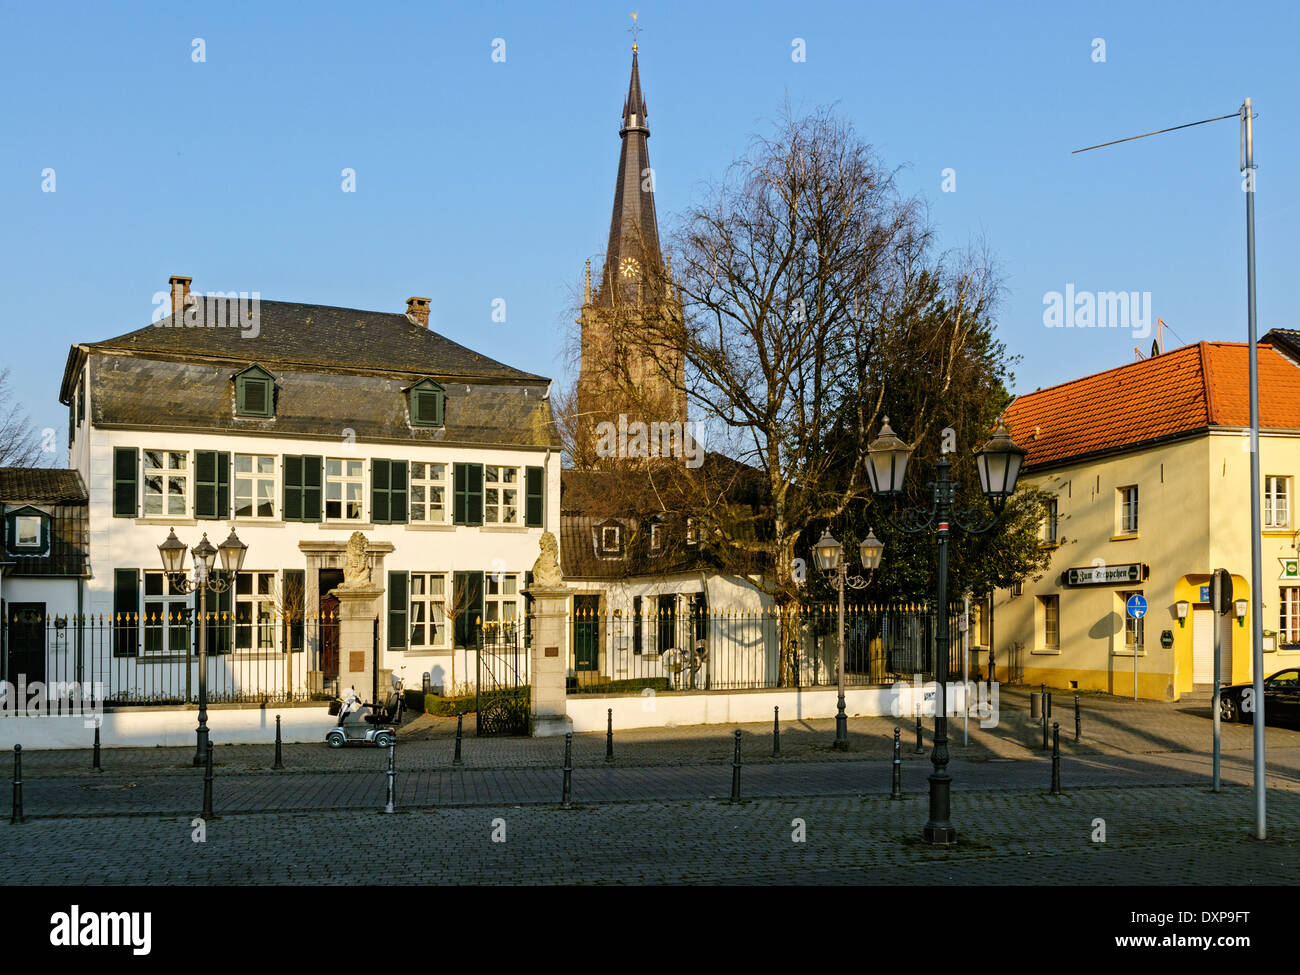 Erkelenz, Haus Spiess and spire of  St. Lambertus Church, NRW, Germany. Stock Photo